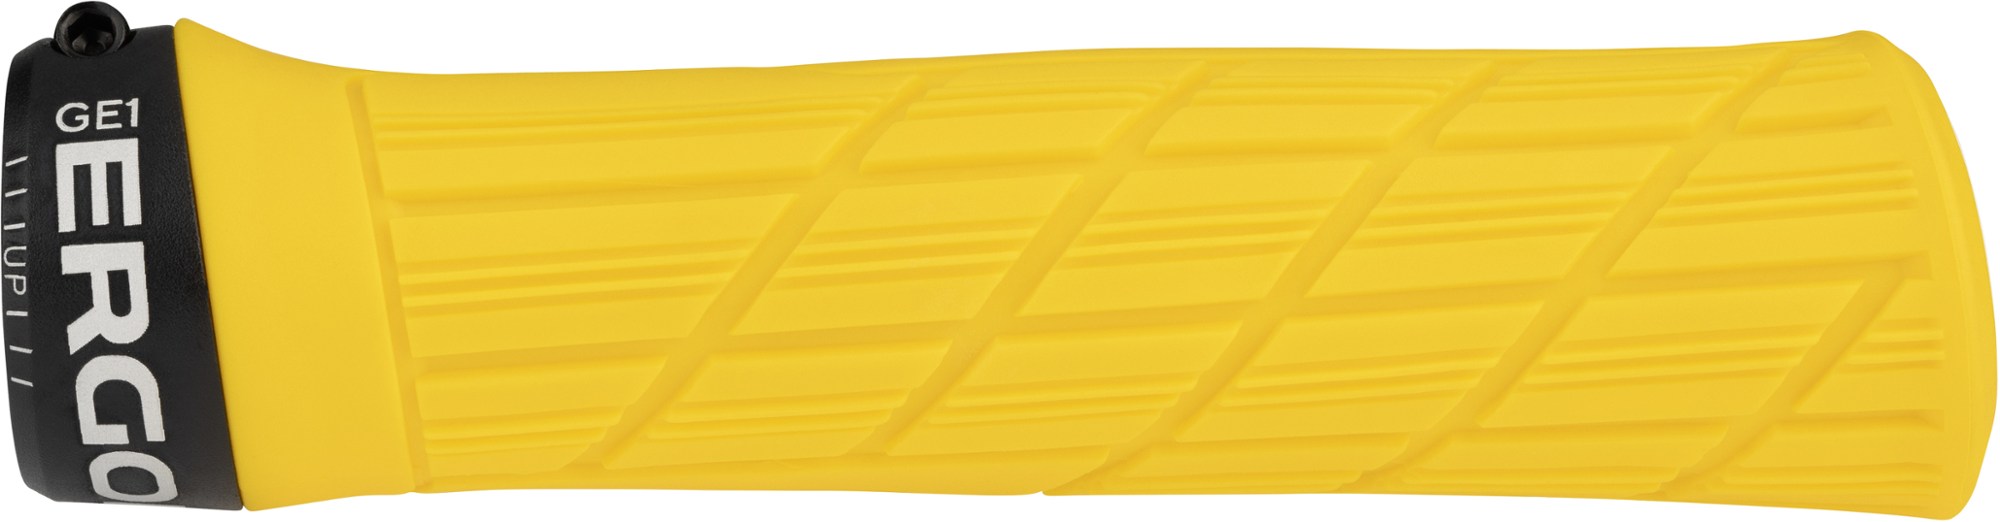 Ручки руля GE1 Evo с фиксатором — один размер Ergon, желтый